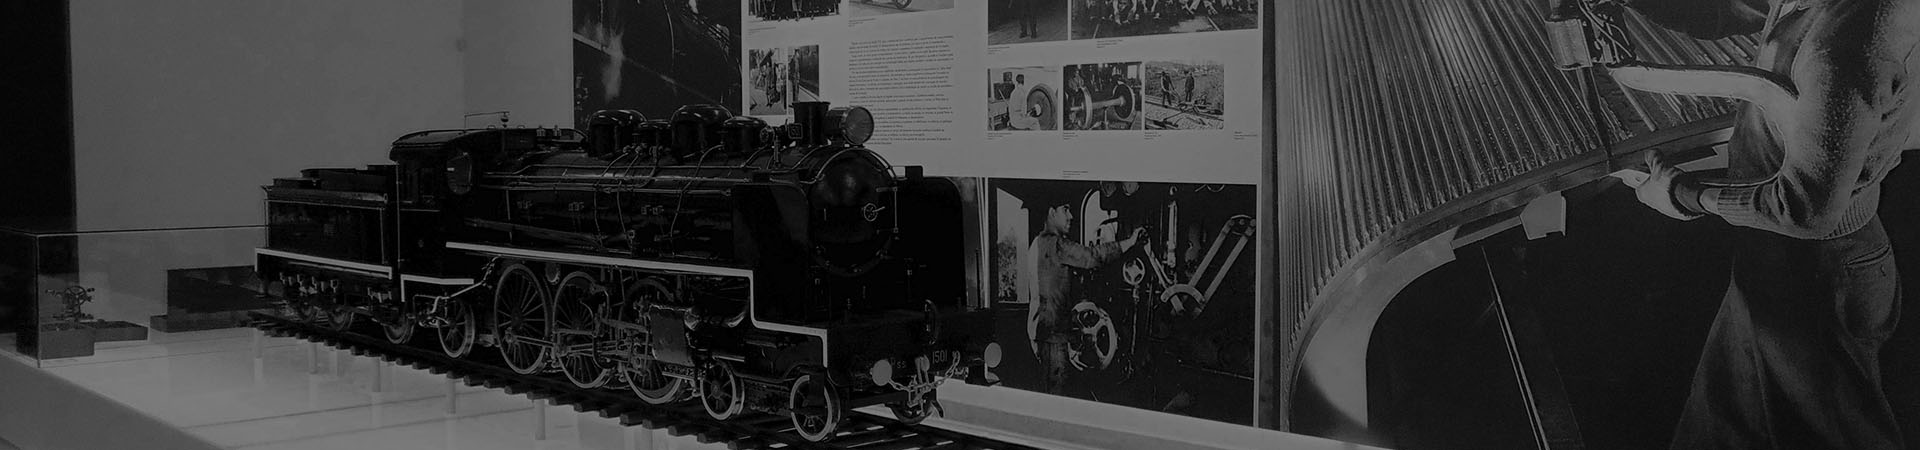 Fotografia do Comboio Presidencial em exposição nas Oficinas do Vapor